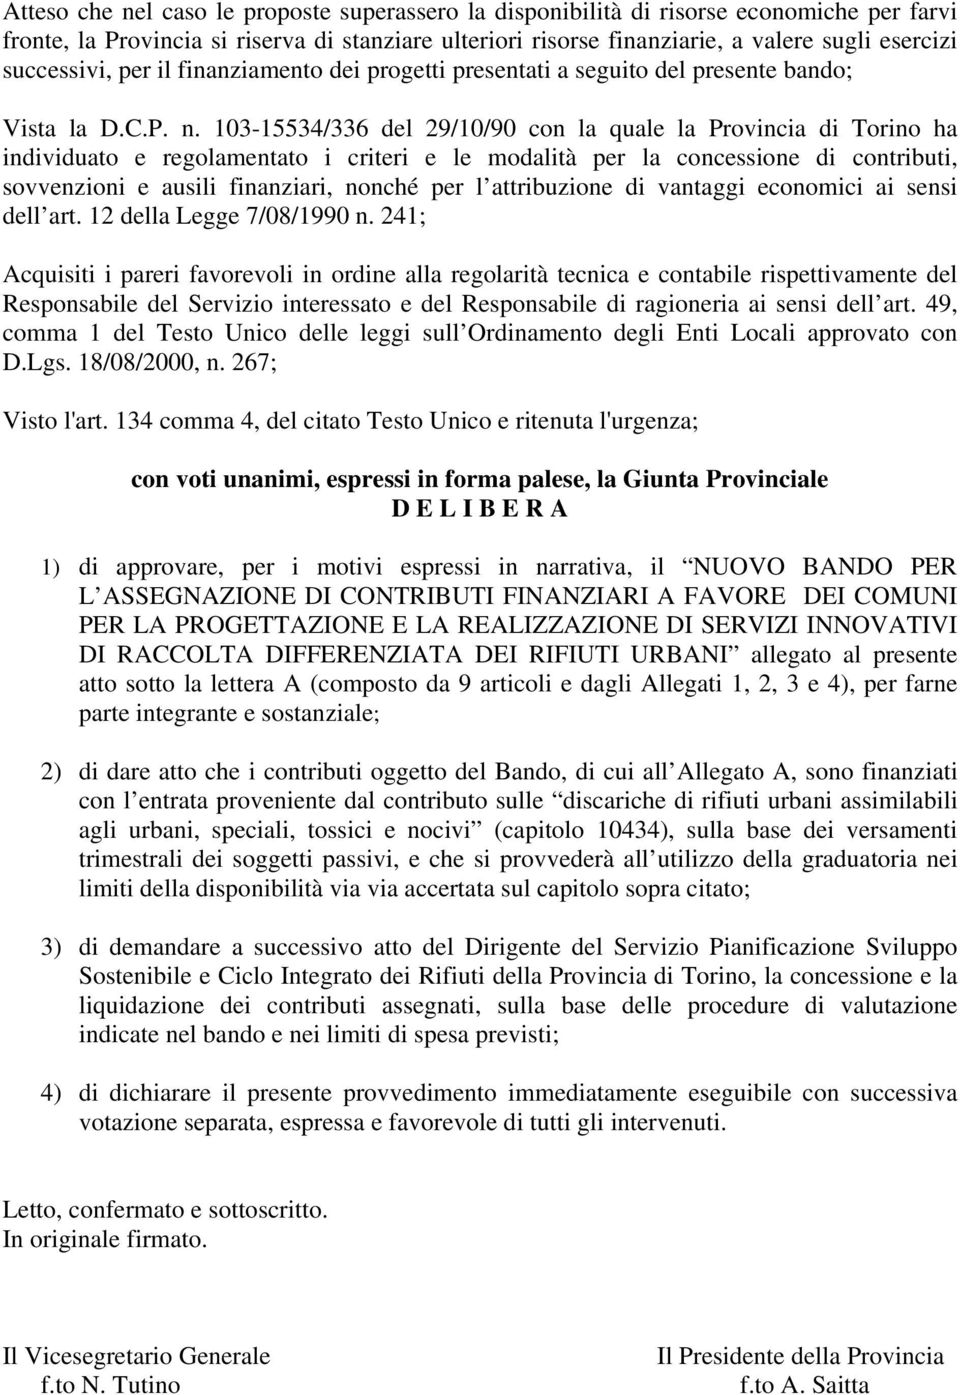 103-15534/336 del 29/10/90 con la quale la Provincia di Torino ha individuato e regolamentato i criteri e le modalità per la concessione di contributi, sovvenzioni e ausili finanziari, nonché per l